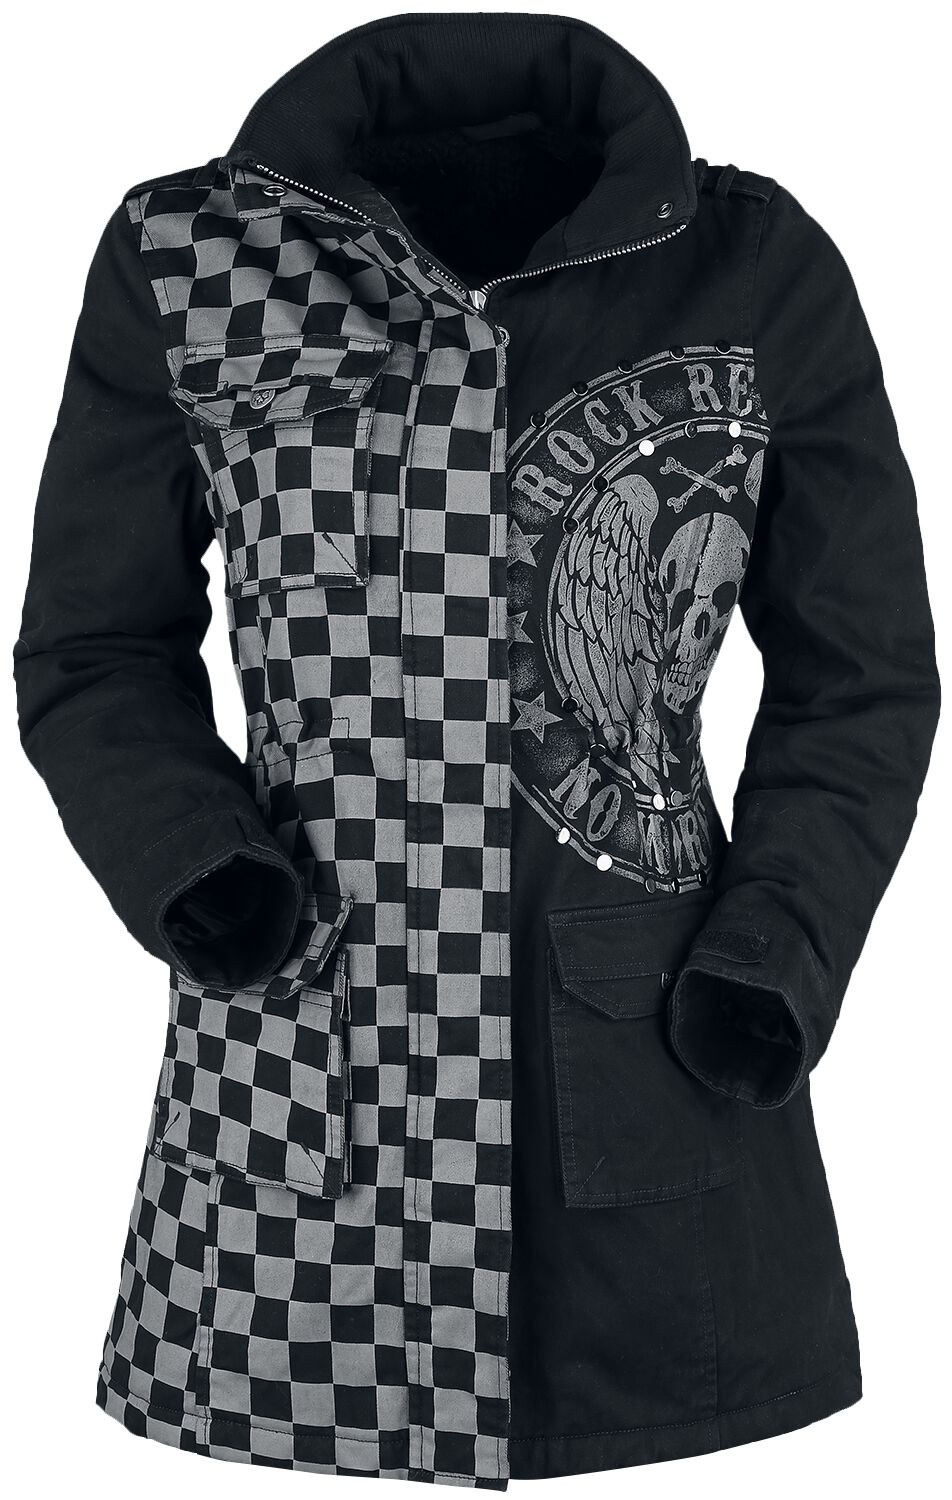 Rock Rebel by EMP - Rock Winterjacke - schwarz/graue Jacke mit Nieten und Print - S bis XXL - für Damen - Größe L - grau/schwarz von Rock Rebel by EMP